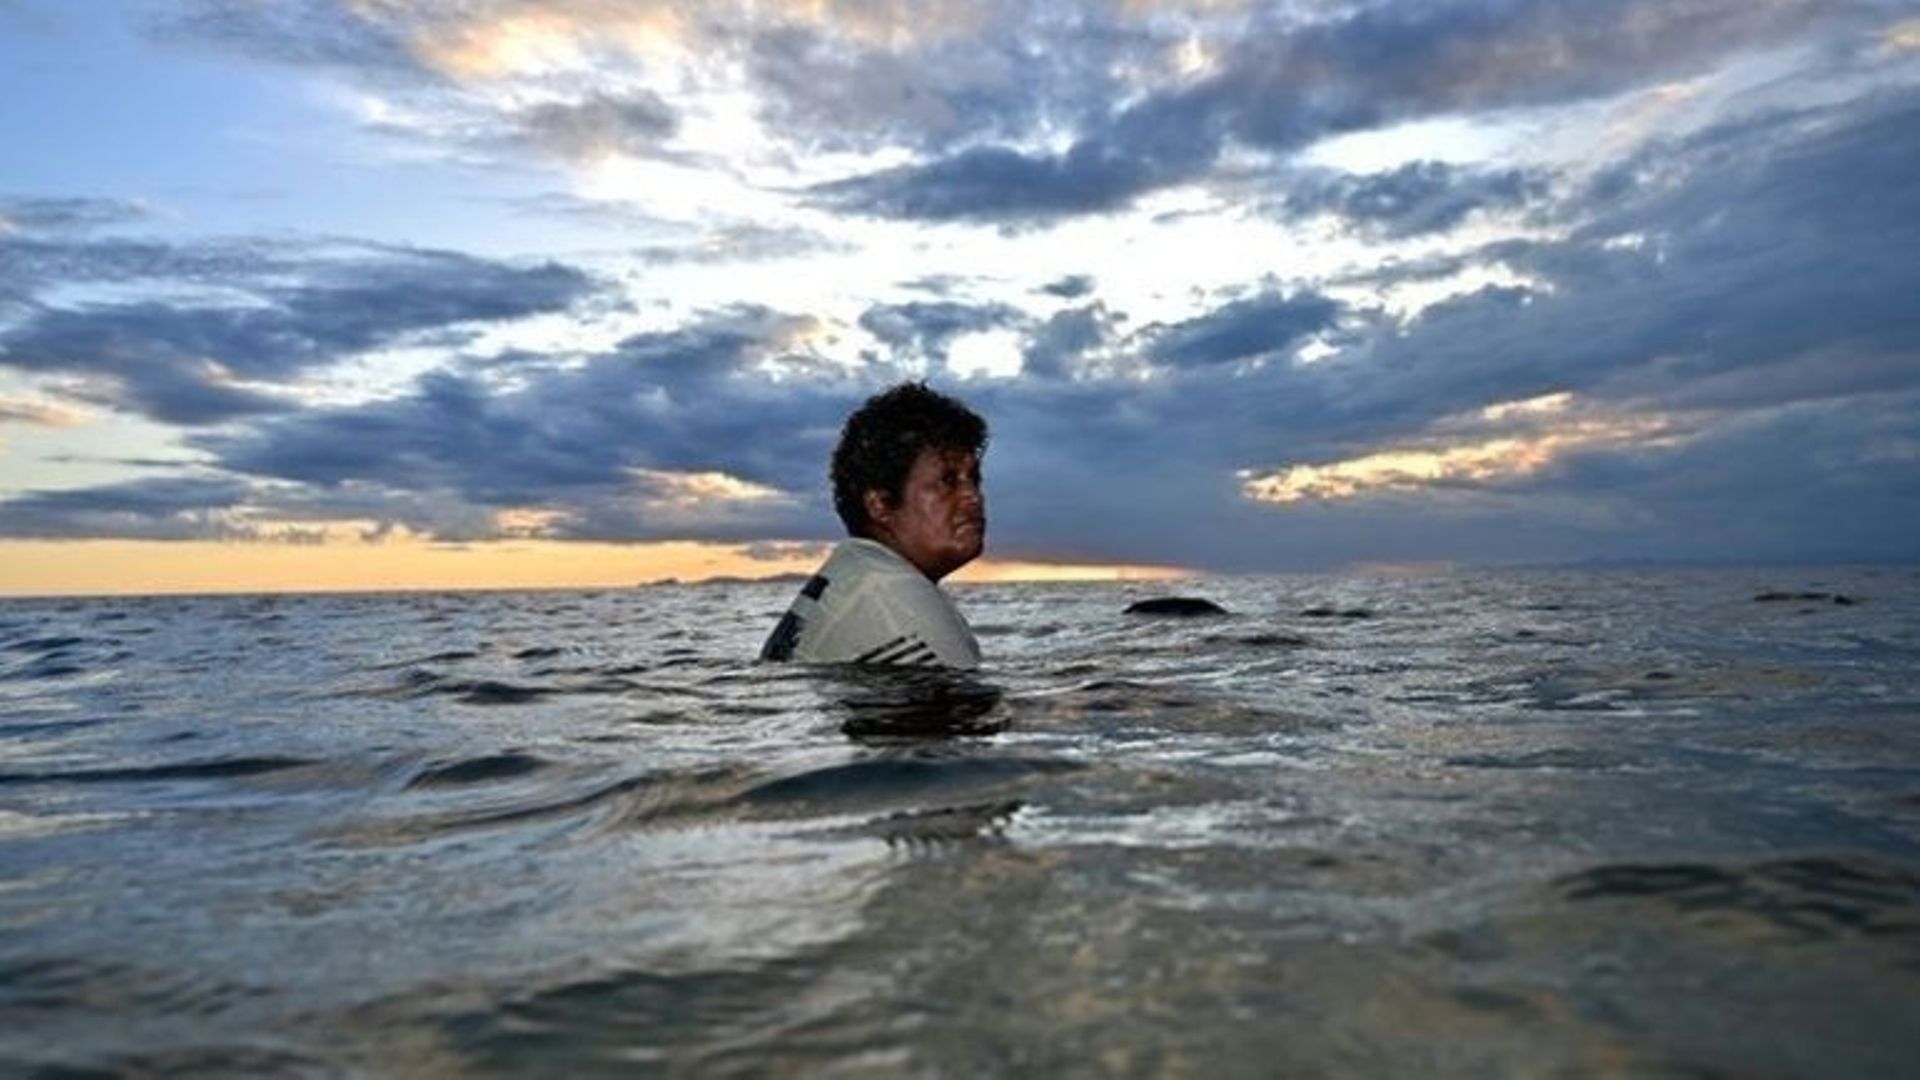 "Personne ne peut arrêter l'eau" : aux Fidji, le changement climatique noie les espoirs.